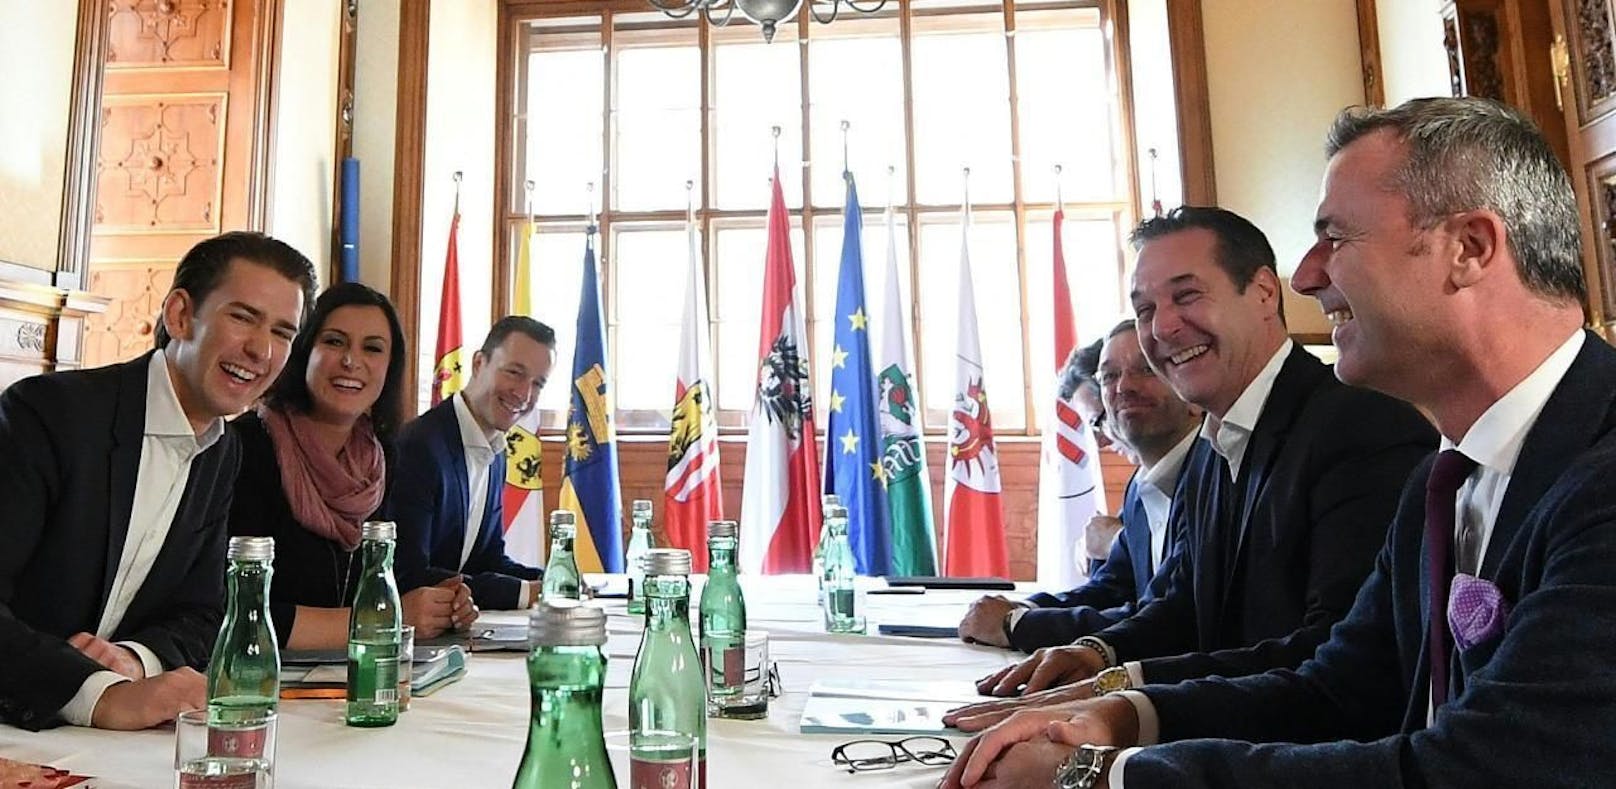 (v.l.) Sebastian Kurz (ÖVP), Elisabeth Köstinger (ÖVP) und Gernot Blümel (ÖVP) sowie Norbert Nemeth (FPÖ), Herbert Kickl (FPÖ), Heinz Christian Strache (FPÖ) im Rahmen der ersten Runde von Koalitionsverhandlungen zwischen ÖVP und FPÖ am Mittwoch, 25. Oktober 2017, in Wien.